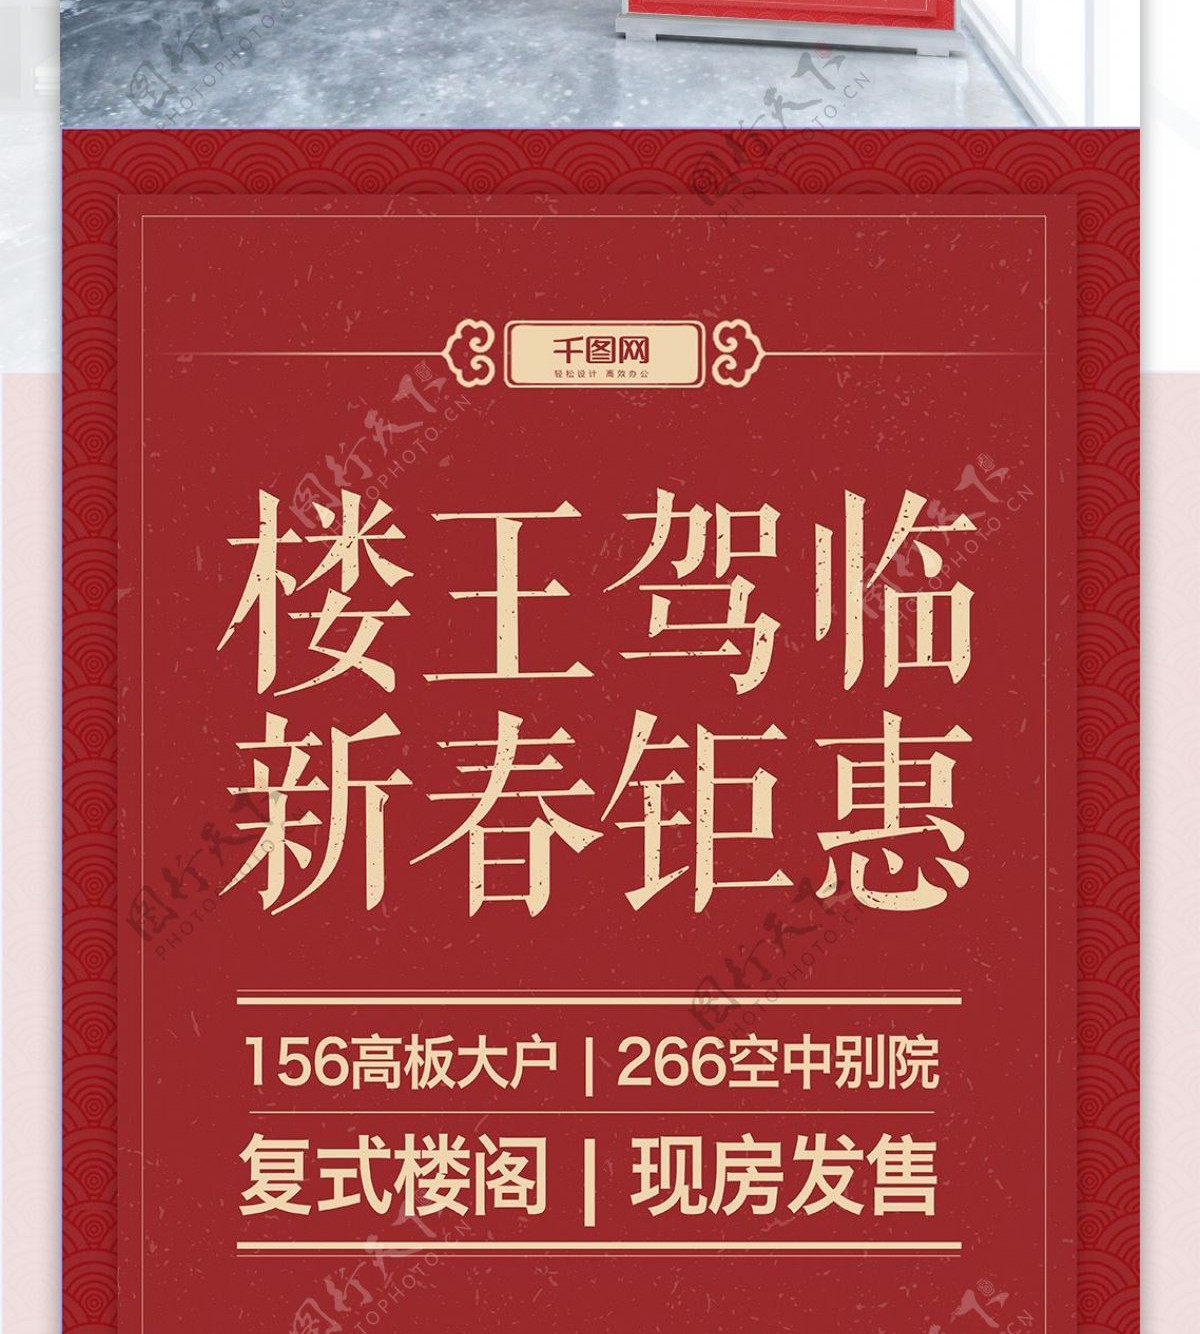 2018新春红色中国风楼盘促销展架